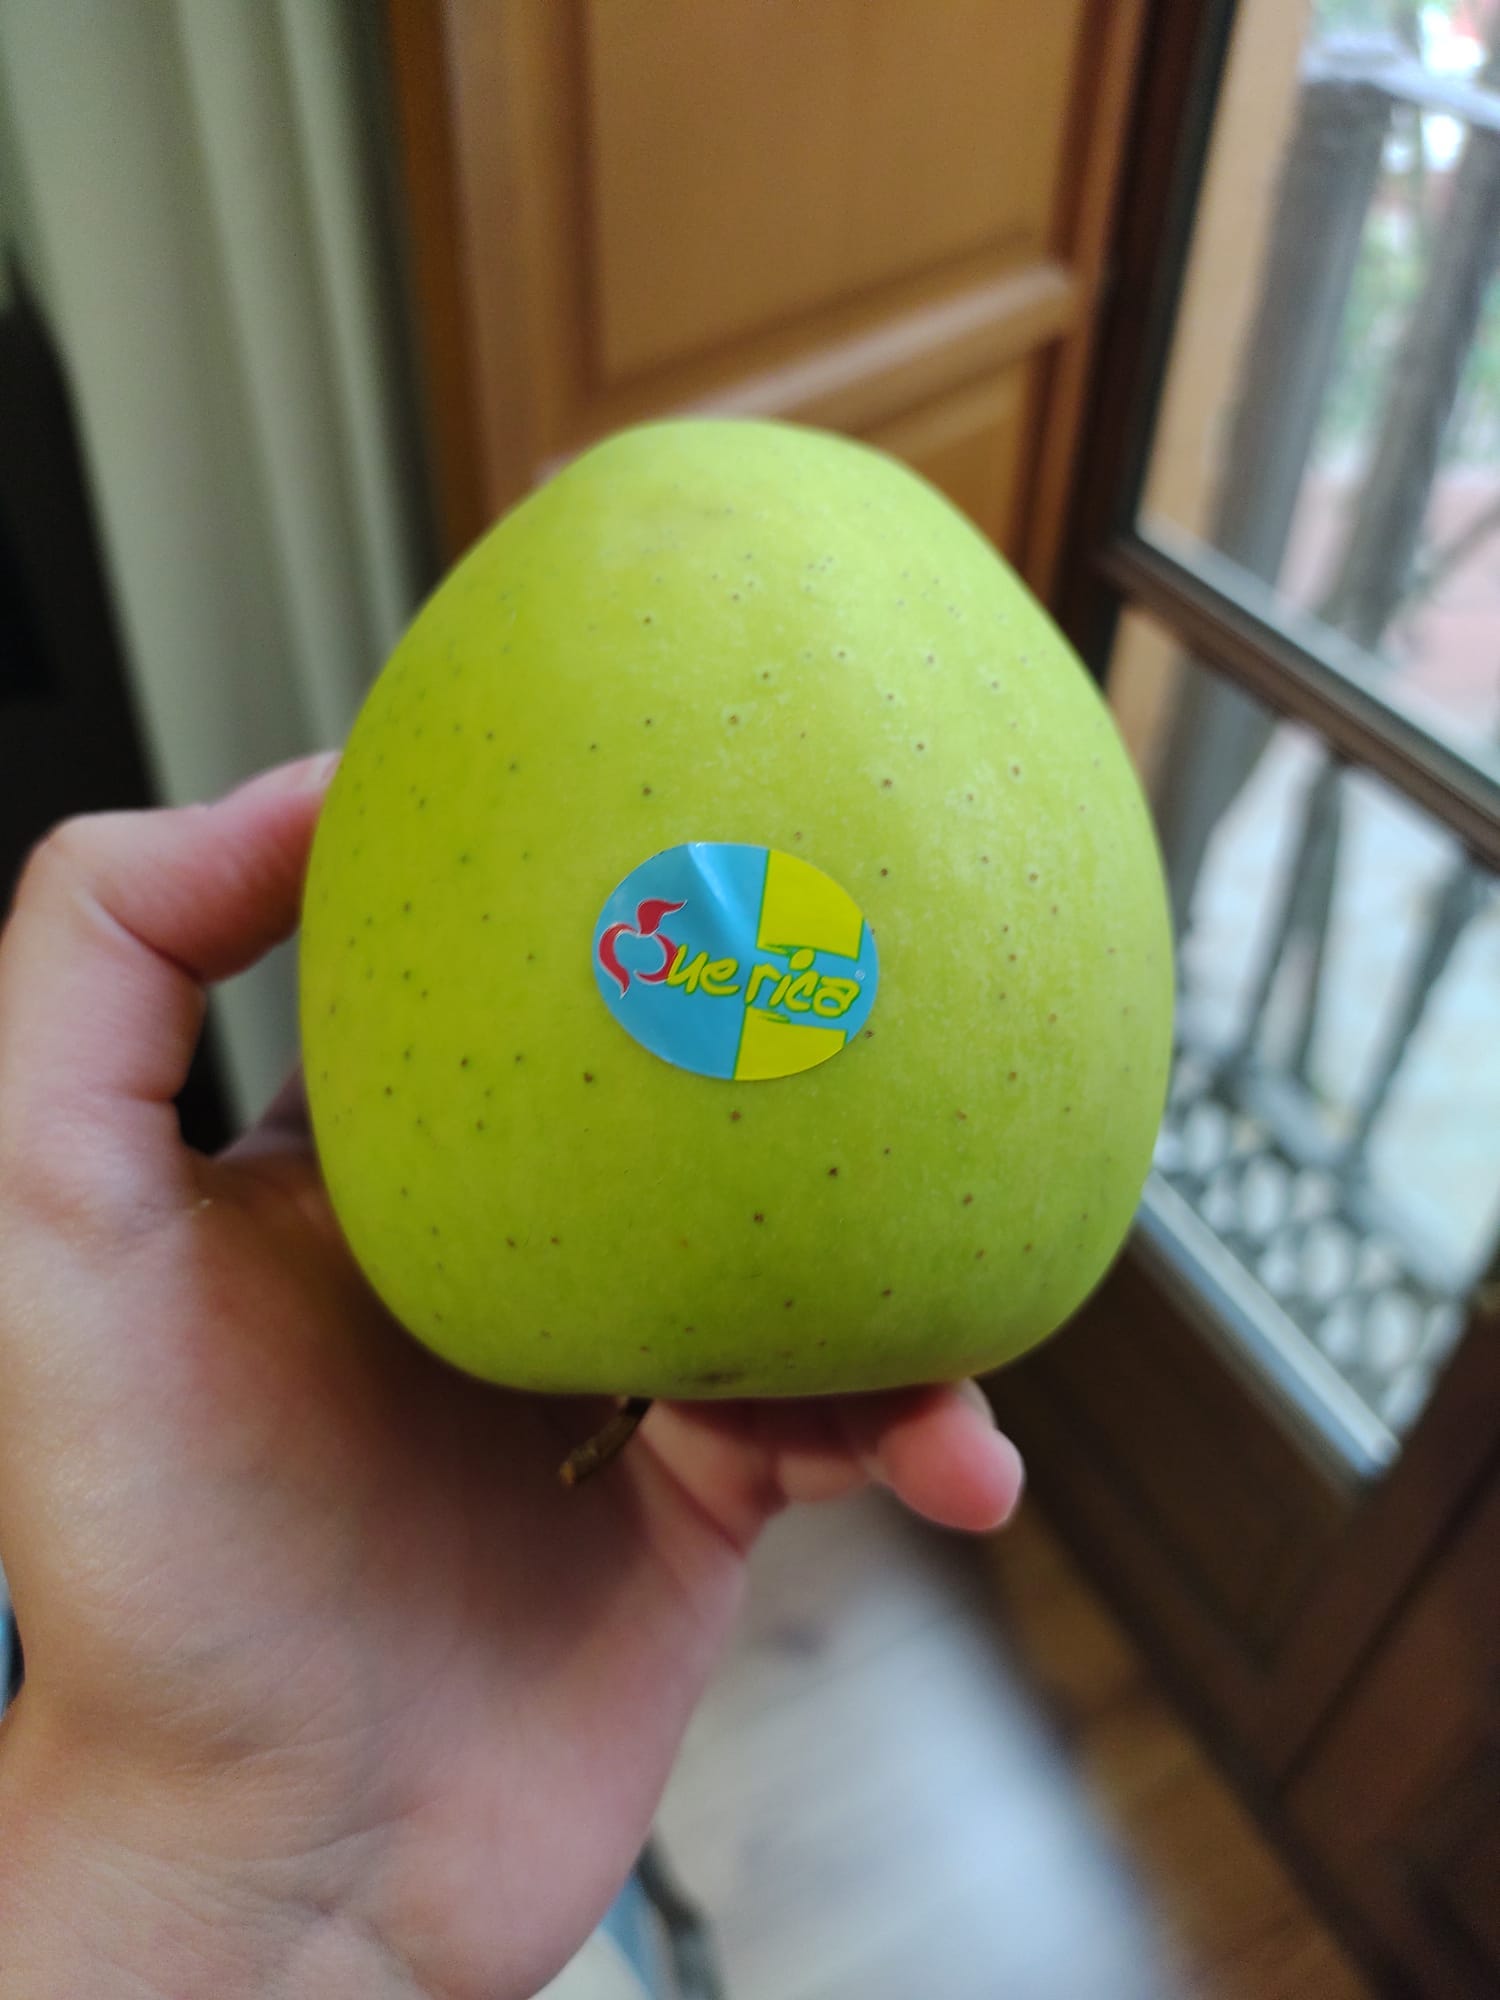 foto de uma maçã verde com um adesivo da marca que rica. A maçã está de ponta cabeça, o adesivo é azul com amarelo. o fundo está desfocado. Uma mão segura a maçã.